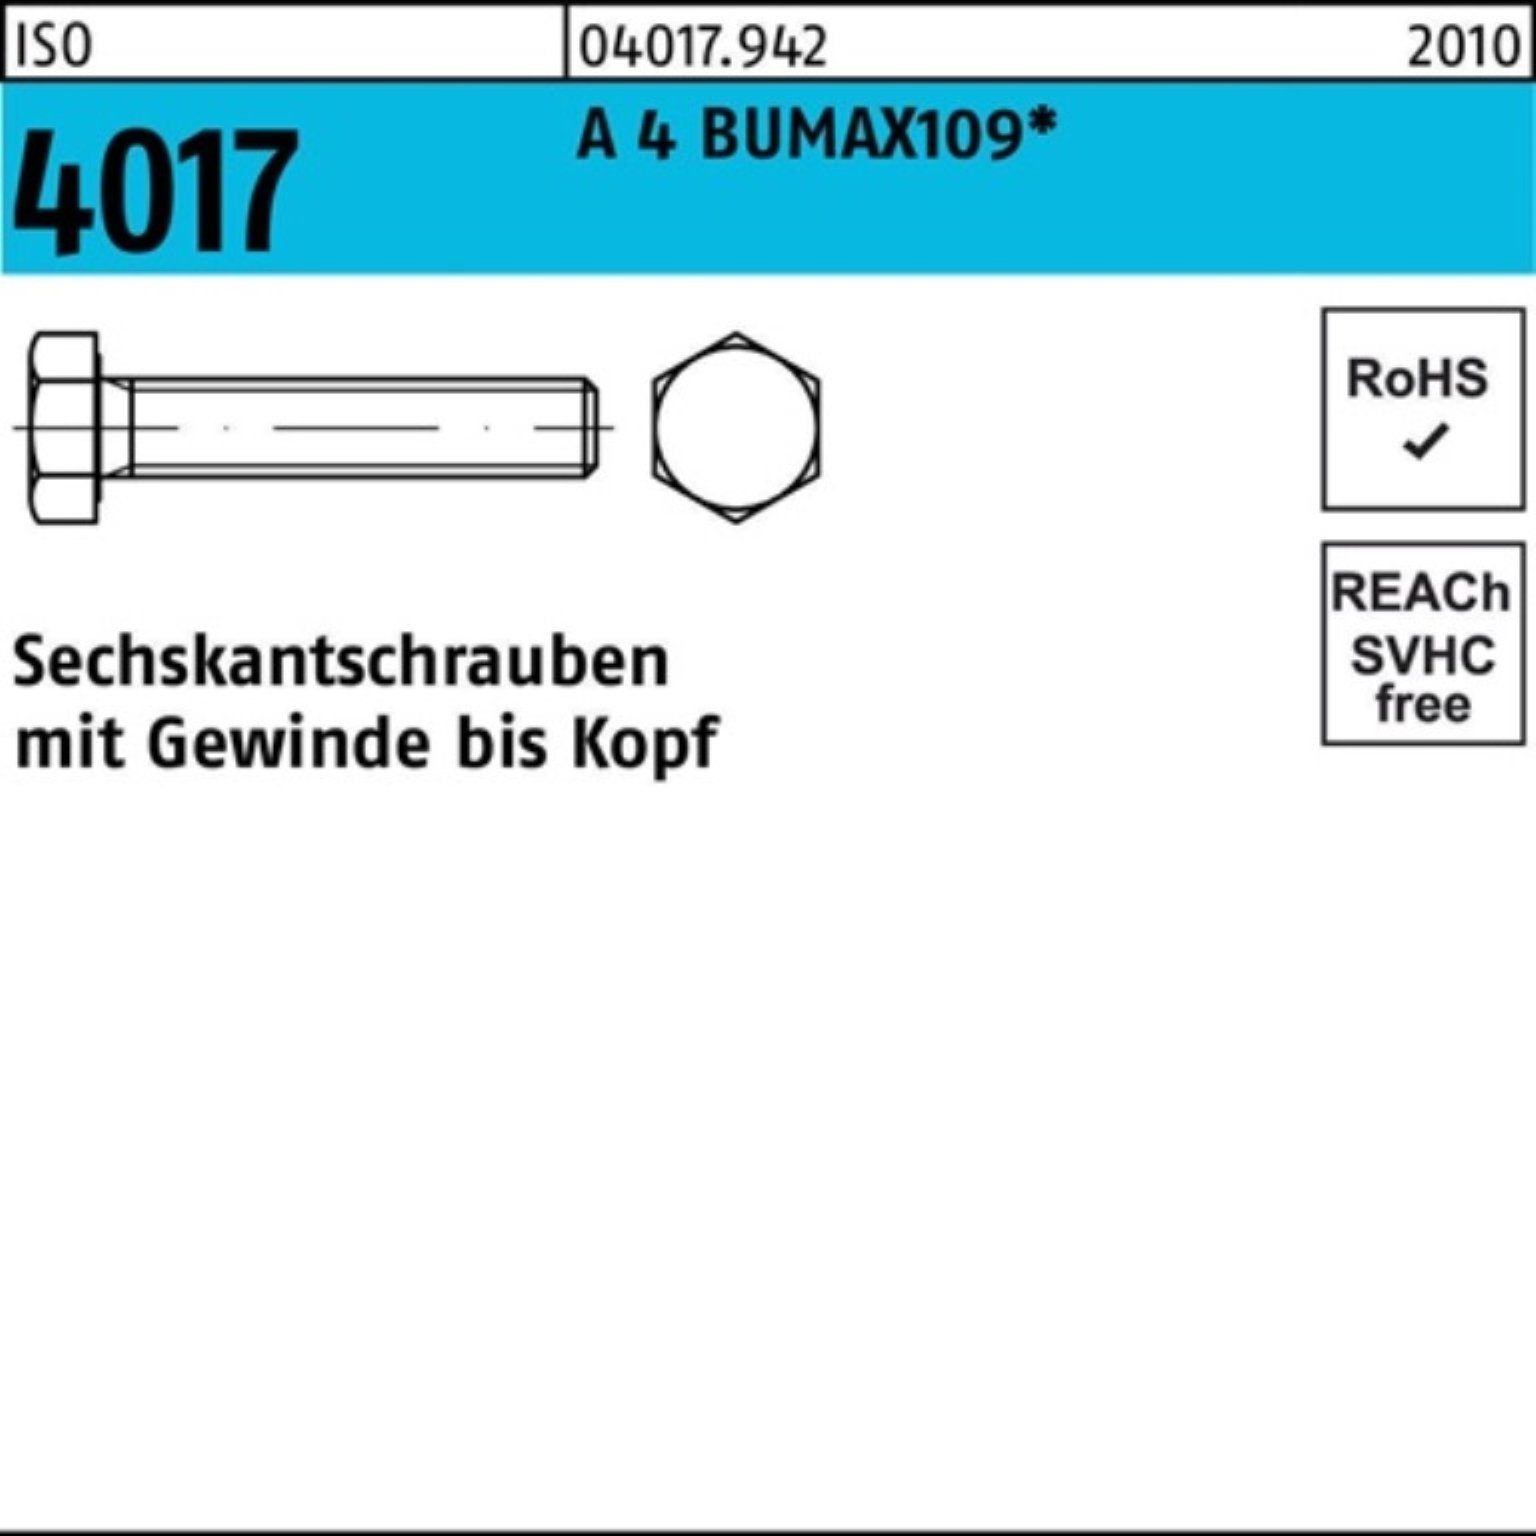 VG 30 Sechskantschraube 4 Stück 4017 100er BUMAX109 M8x ISO Sechskantschraube Bufab Pack 50 A